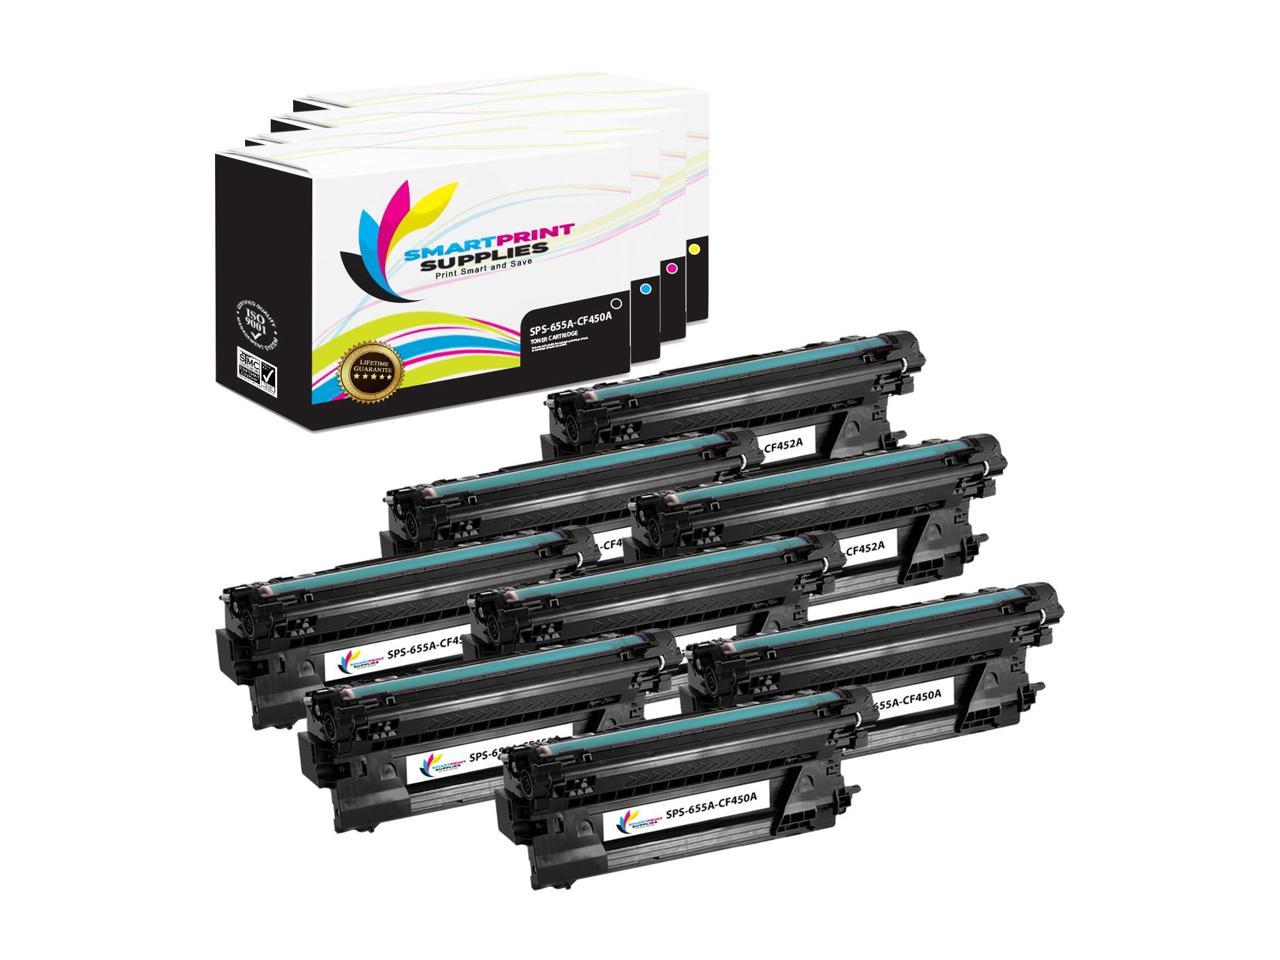 Smart Print Supplies 655A HP CF451A Cyan Compatible Toner Cartridge Replacement for Color Laserjet Enterprise M652 M653 M681 M682 Printers 10,500 Pages 